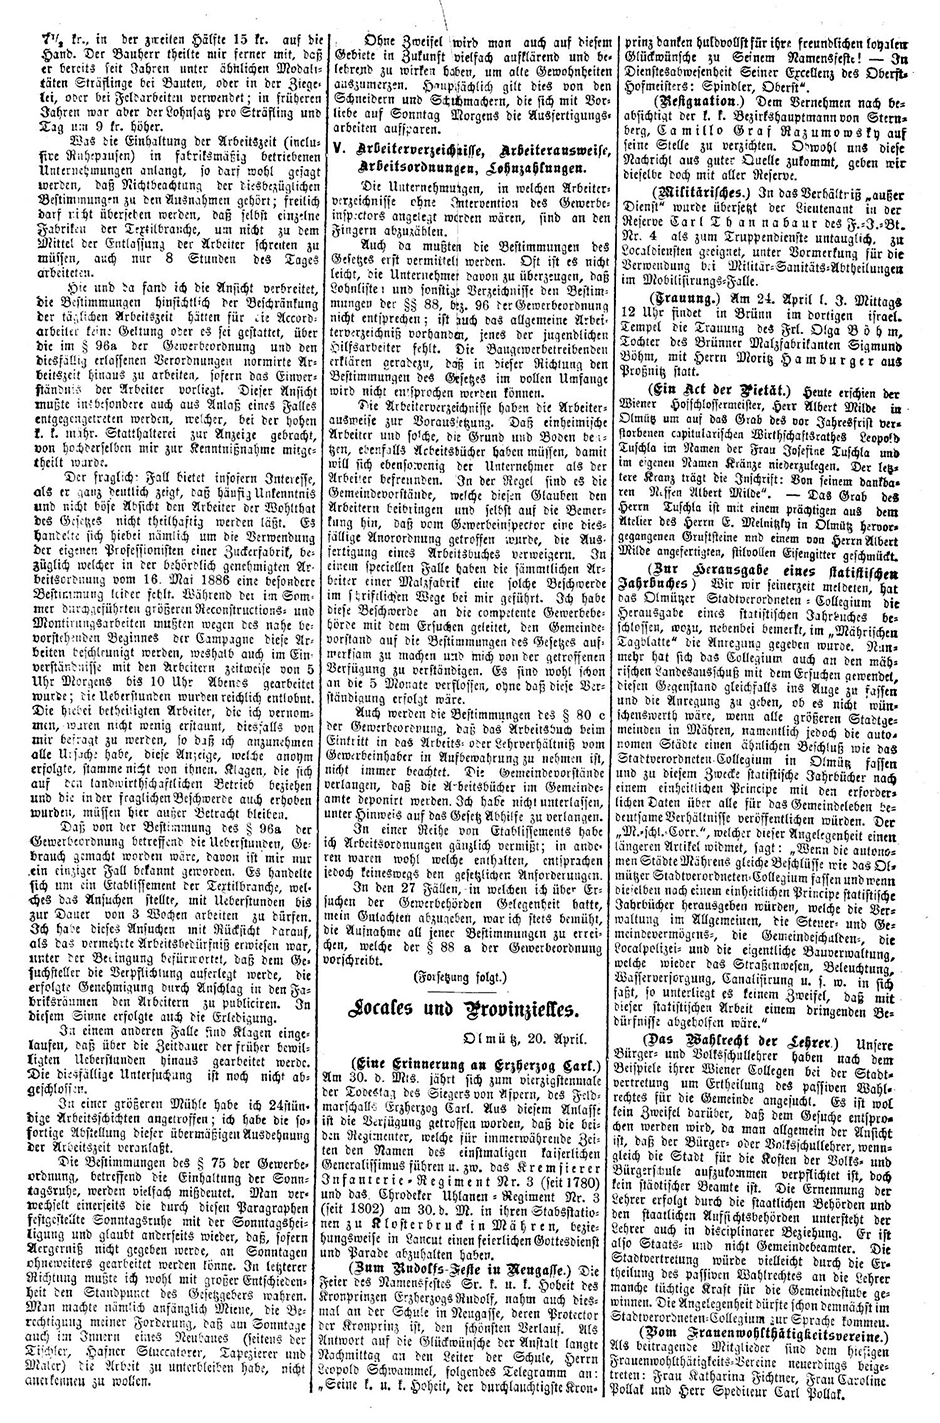 Archivbild: Mährisches Tagblatt, rechte Spalte, oben